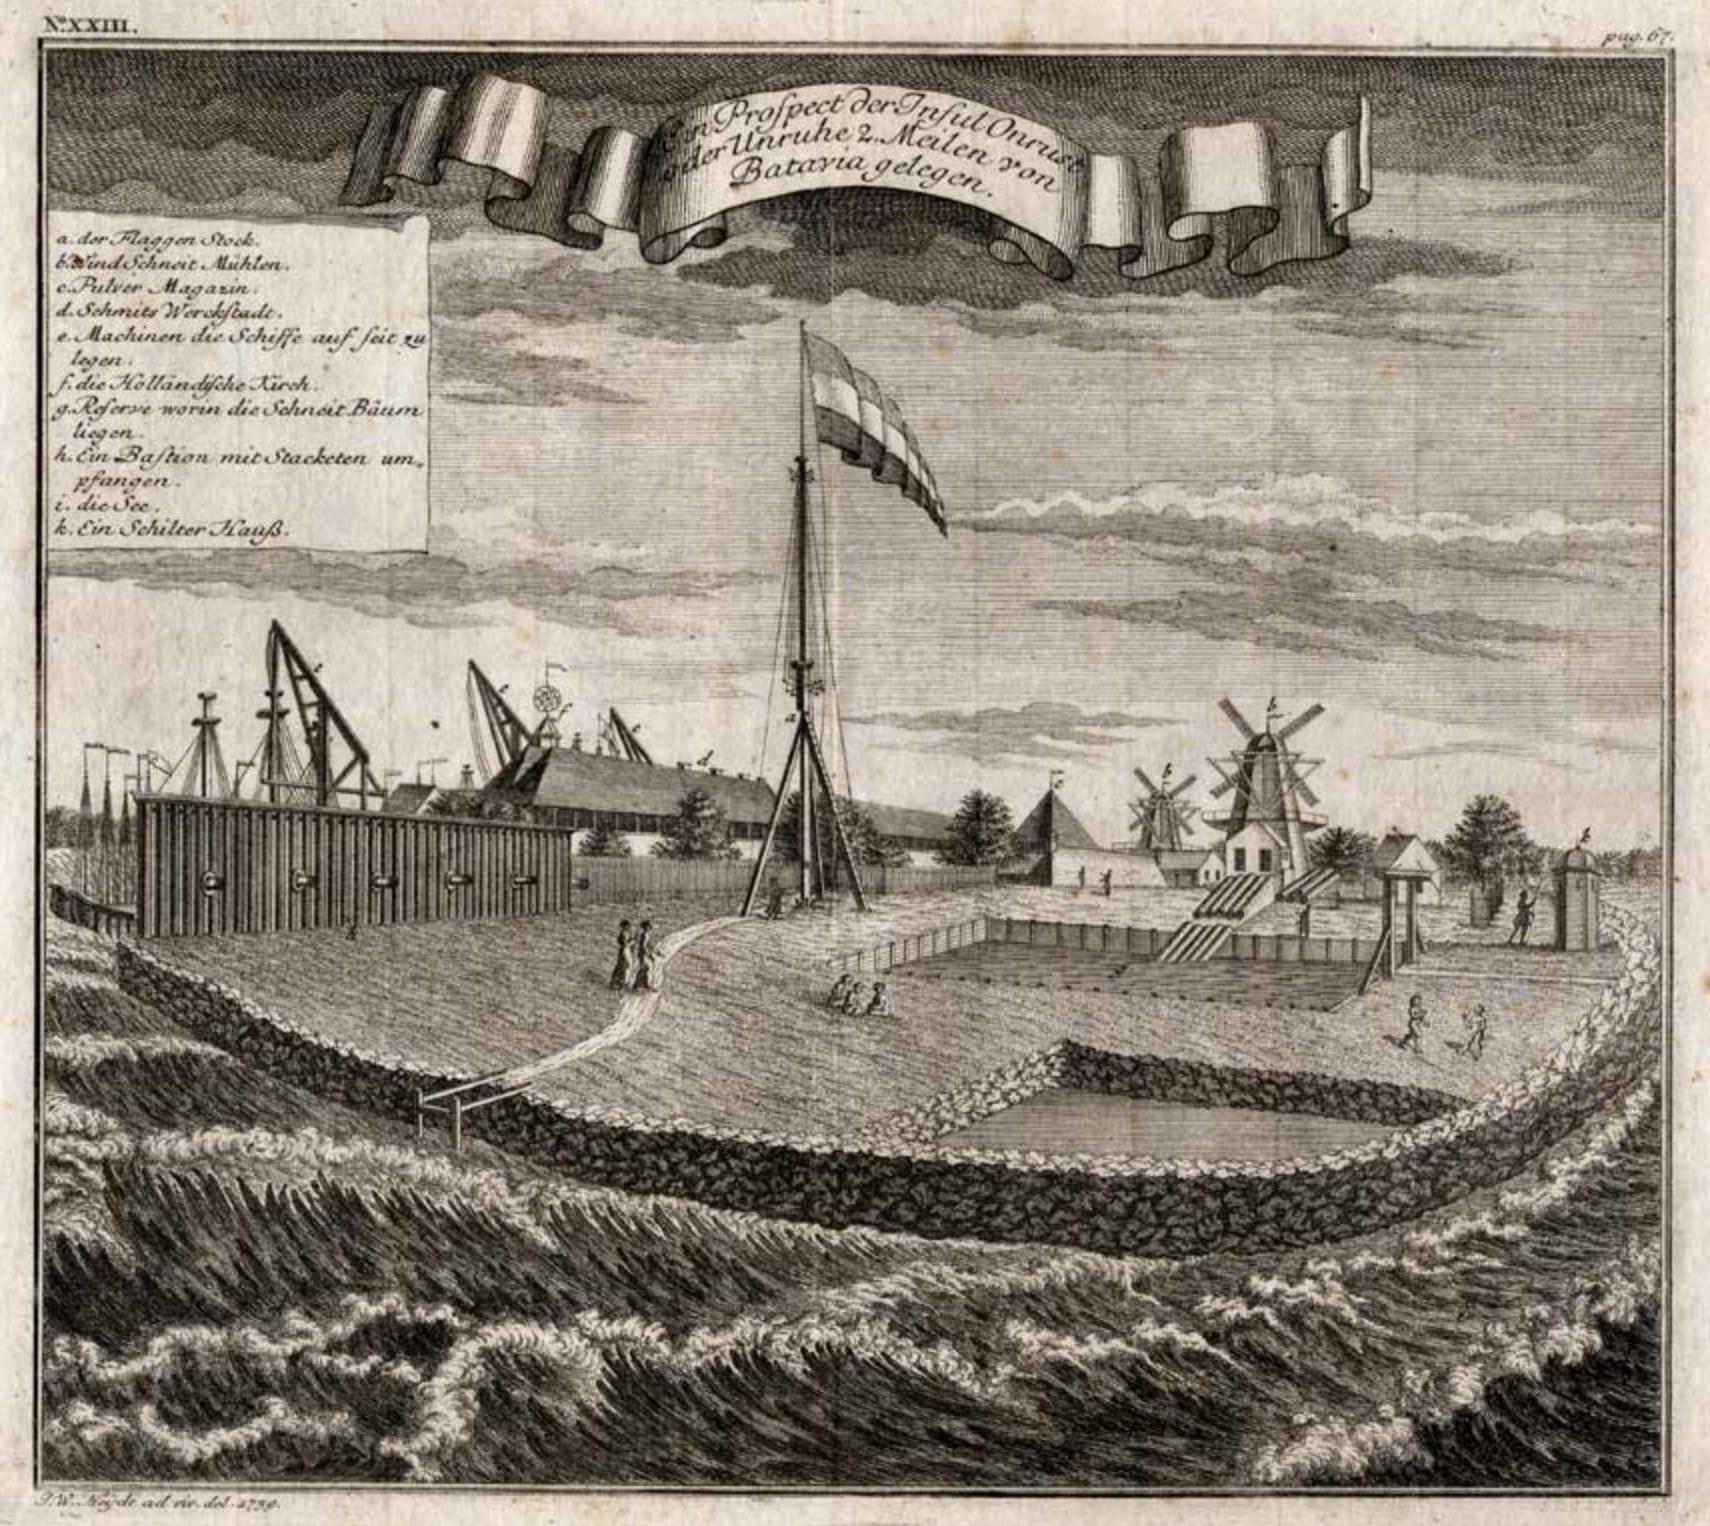 describing onrust island as a isolated island in dutch colonialism